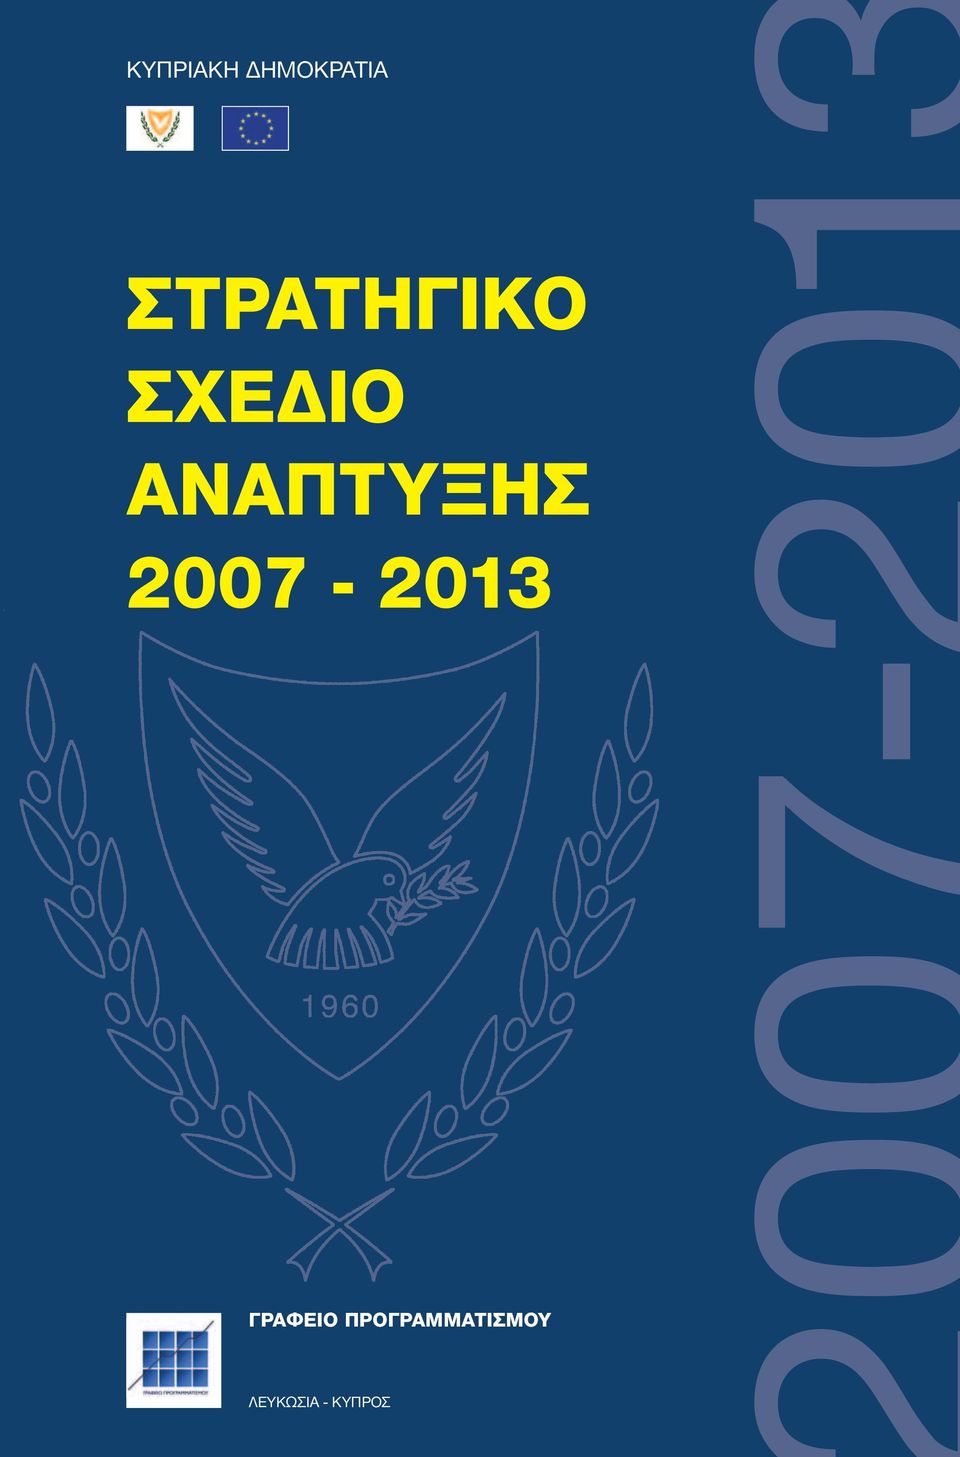 ΑΝΑΠΤΥΞΗΣ 2007-2013